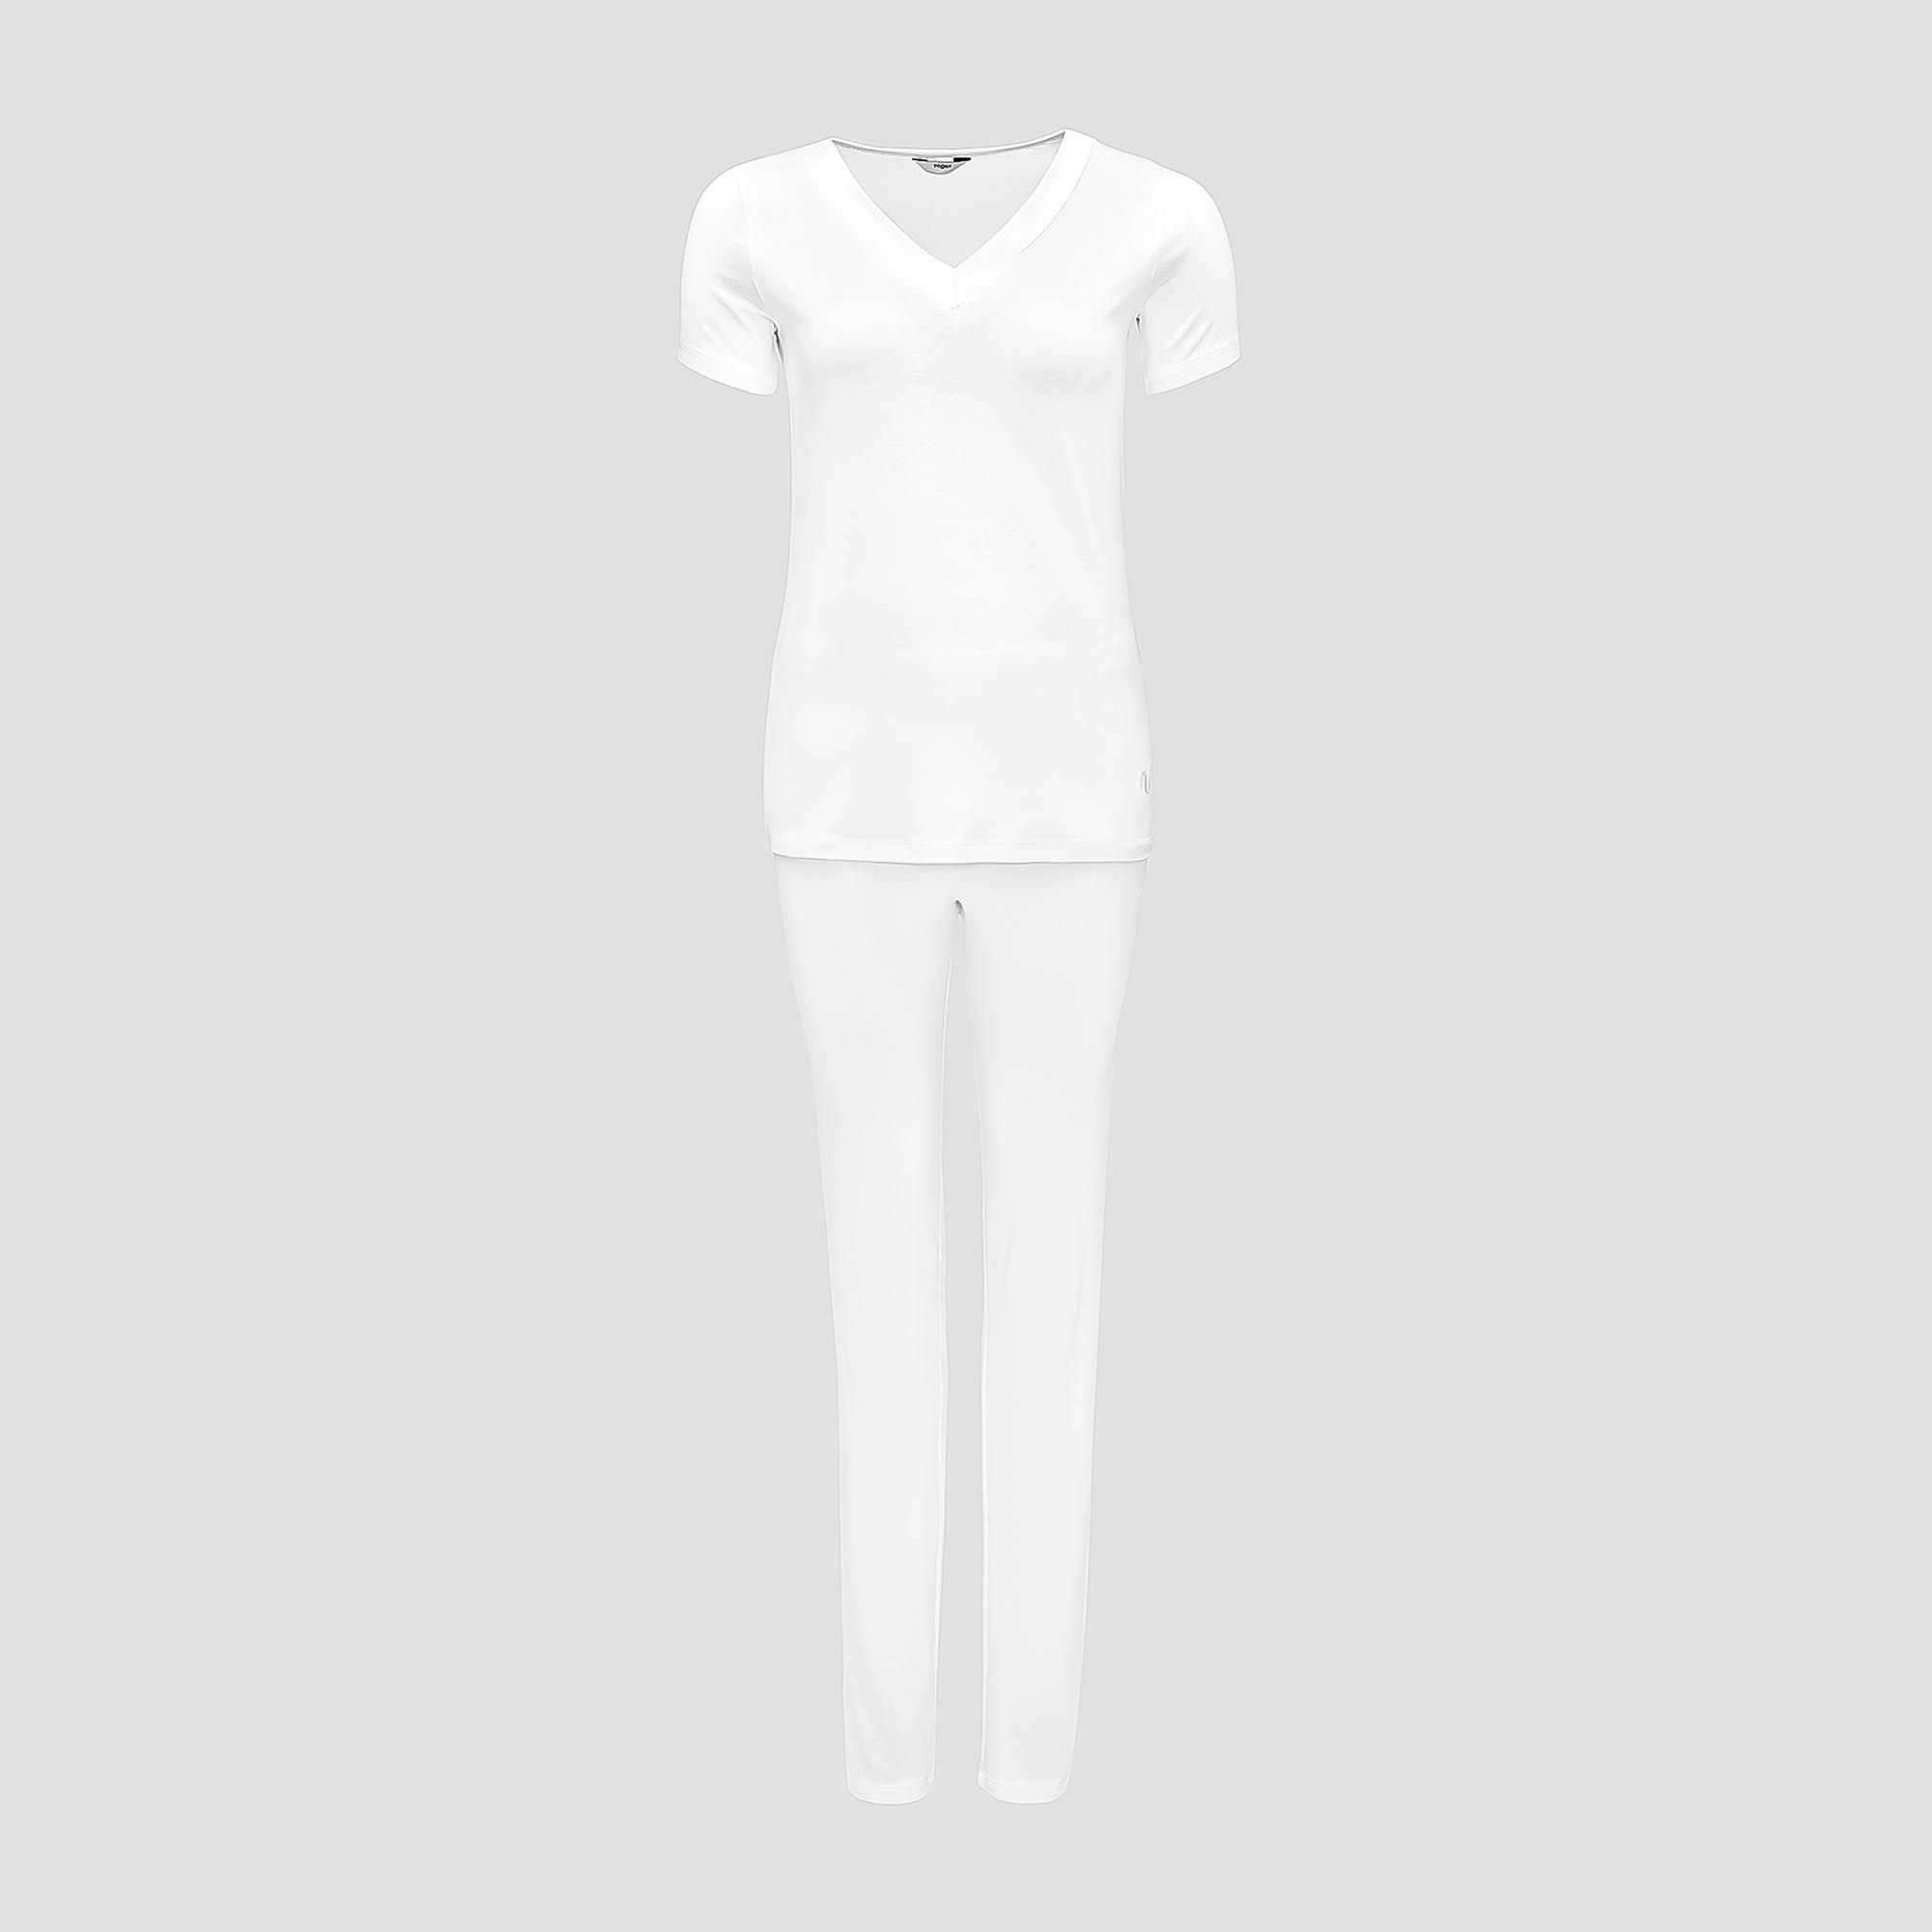 Пижама Togas Ингелла белая женская S(44) 2 предмета, цвет белый, размер S(44) - фото 1